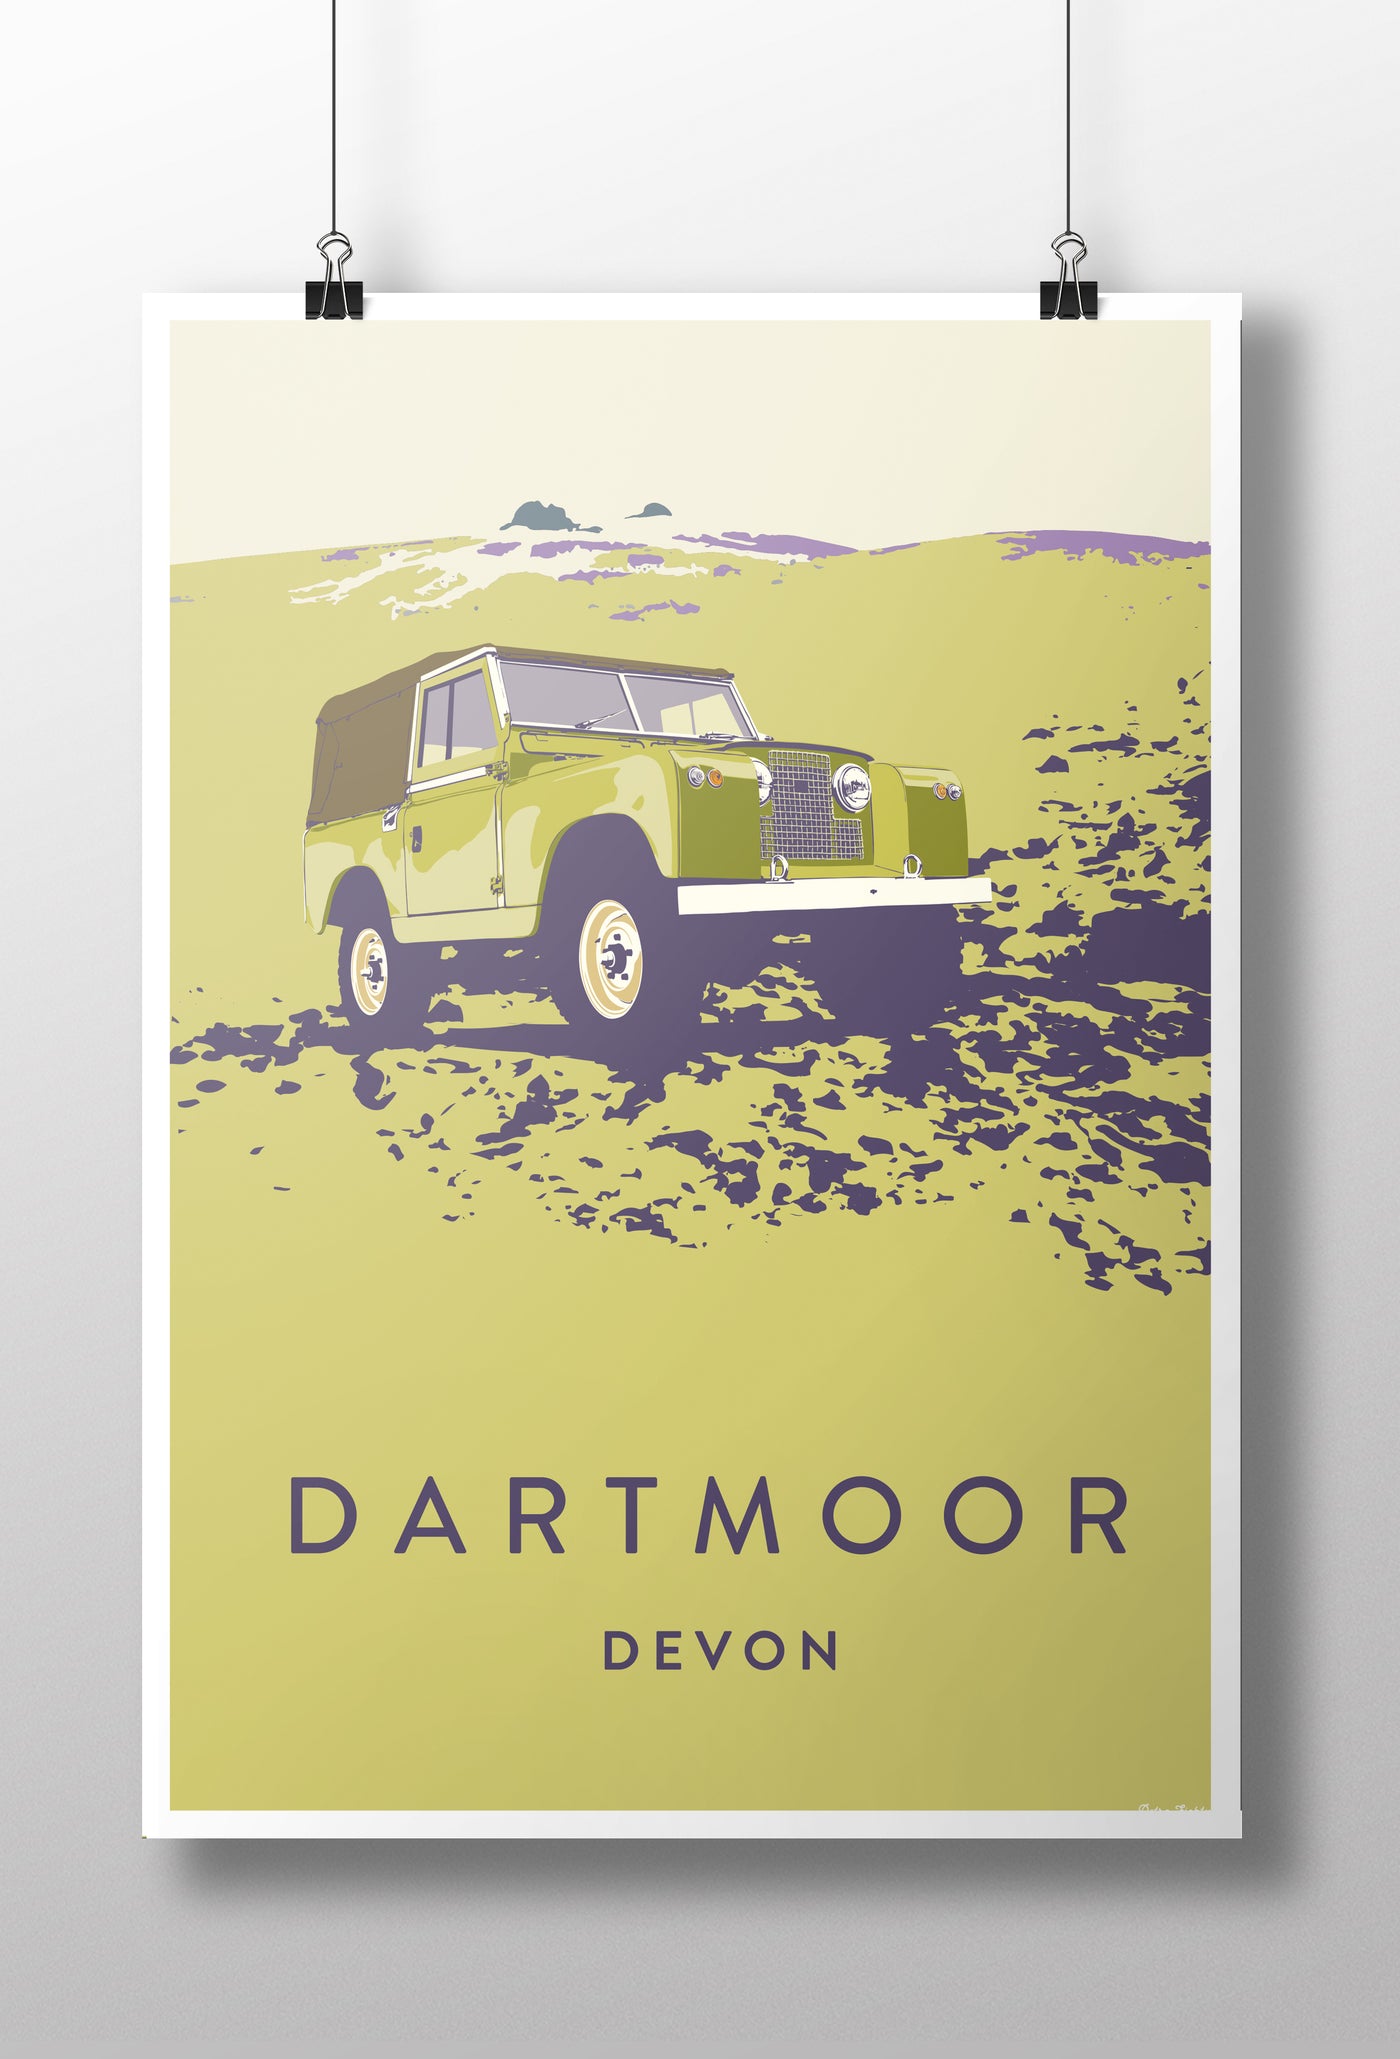 'Dartmoor' Series 2 /3  Prints